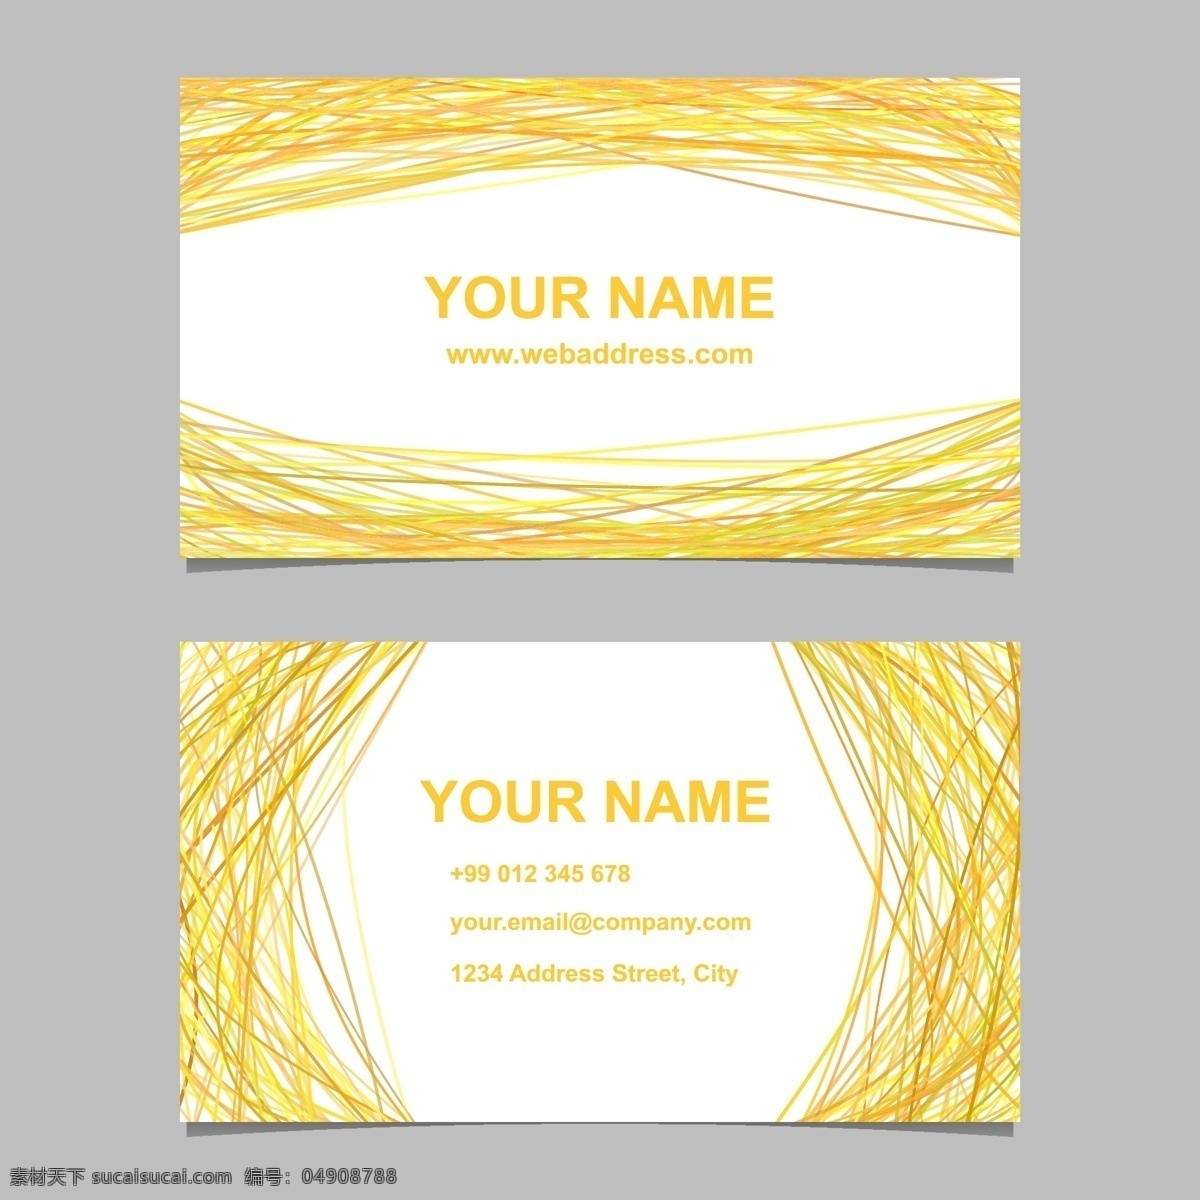 黄色 名片 模板 集 矢量 图形 曲线 背景 抽象背景 框架 传单 商业 抽象 卡片 纸张 办公室 线条 布局 颜色 网络 演示 数字